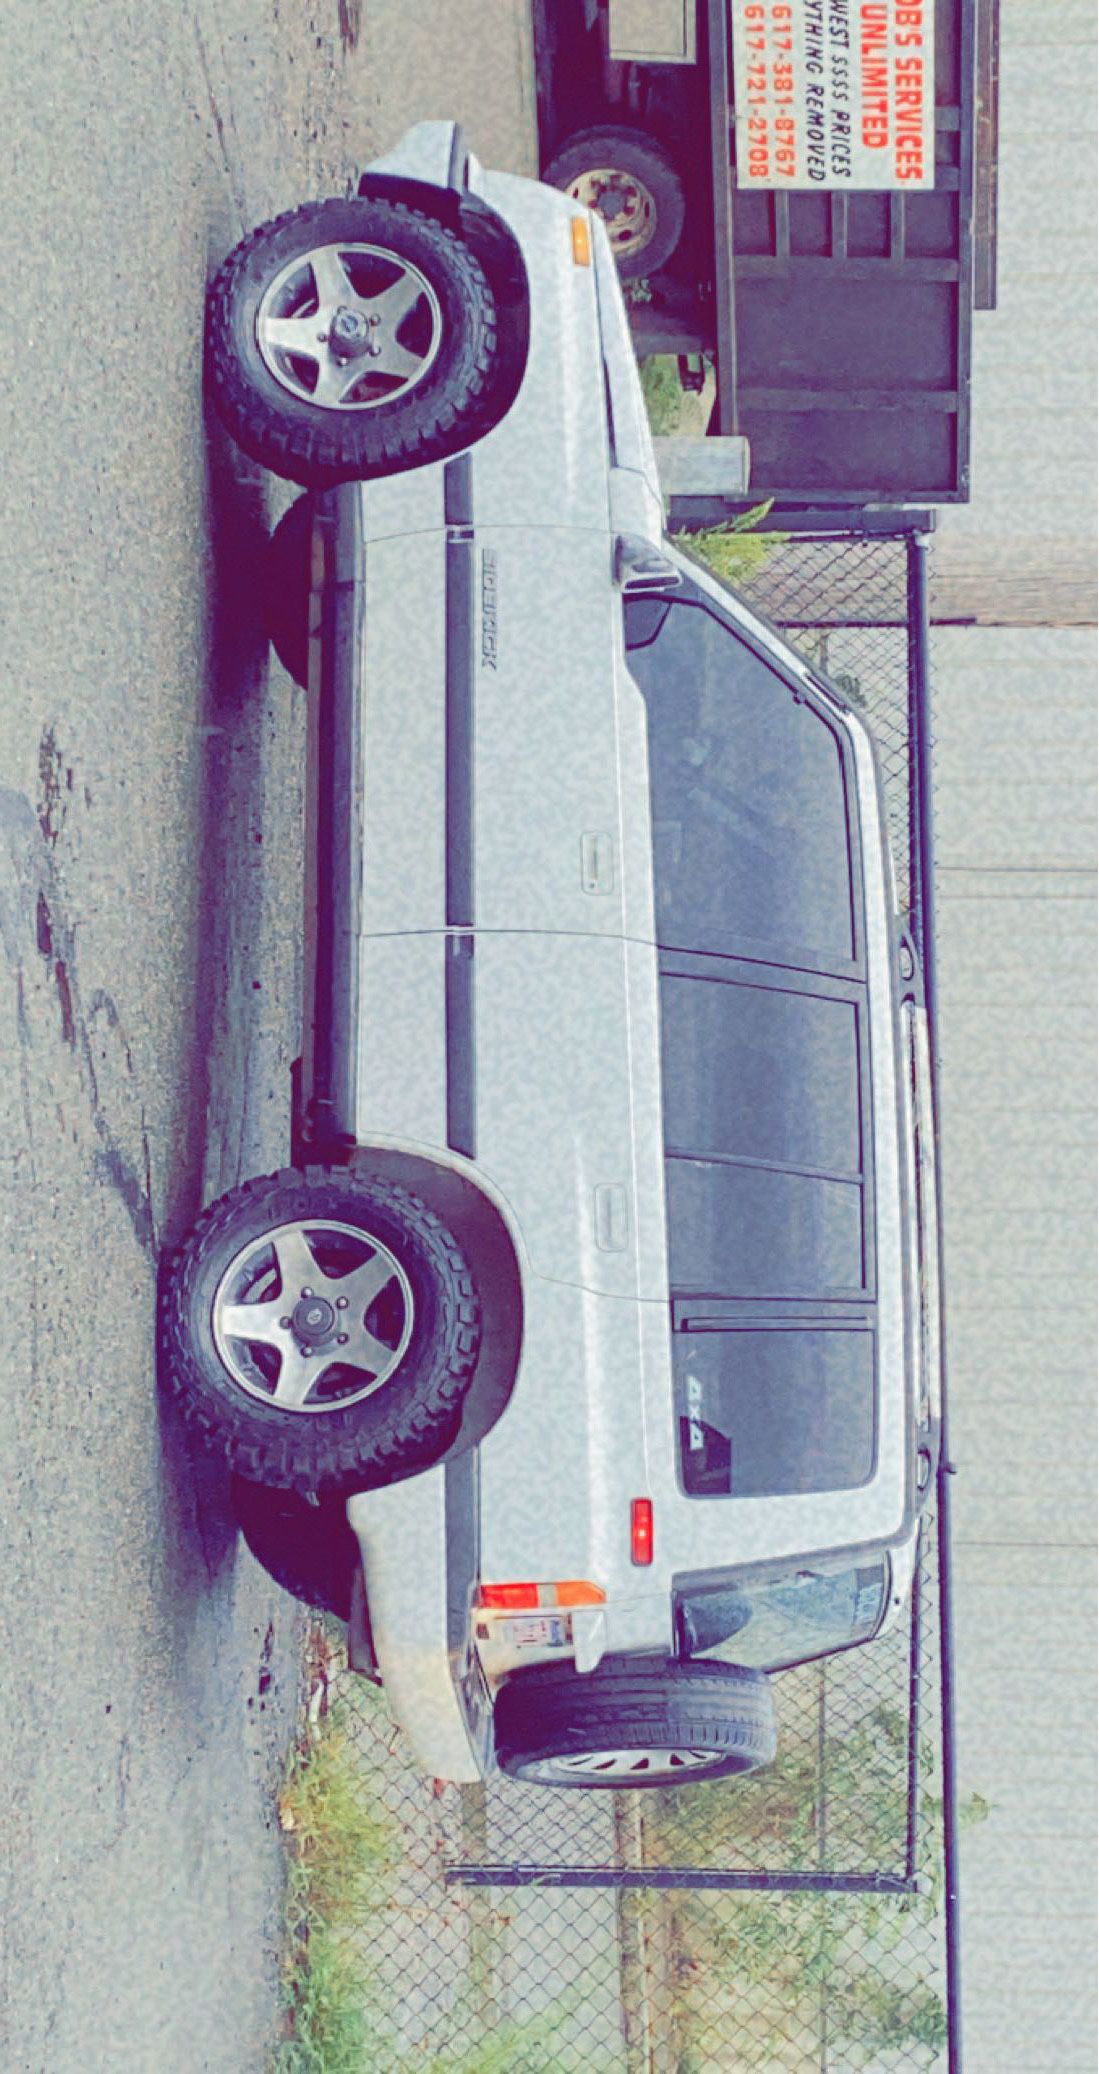 1994 Suzuki Sidekick